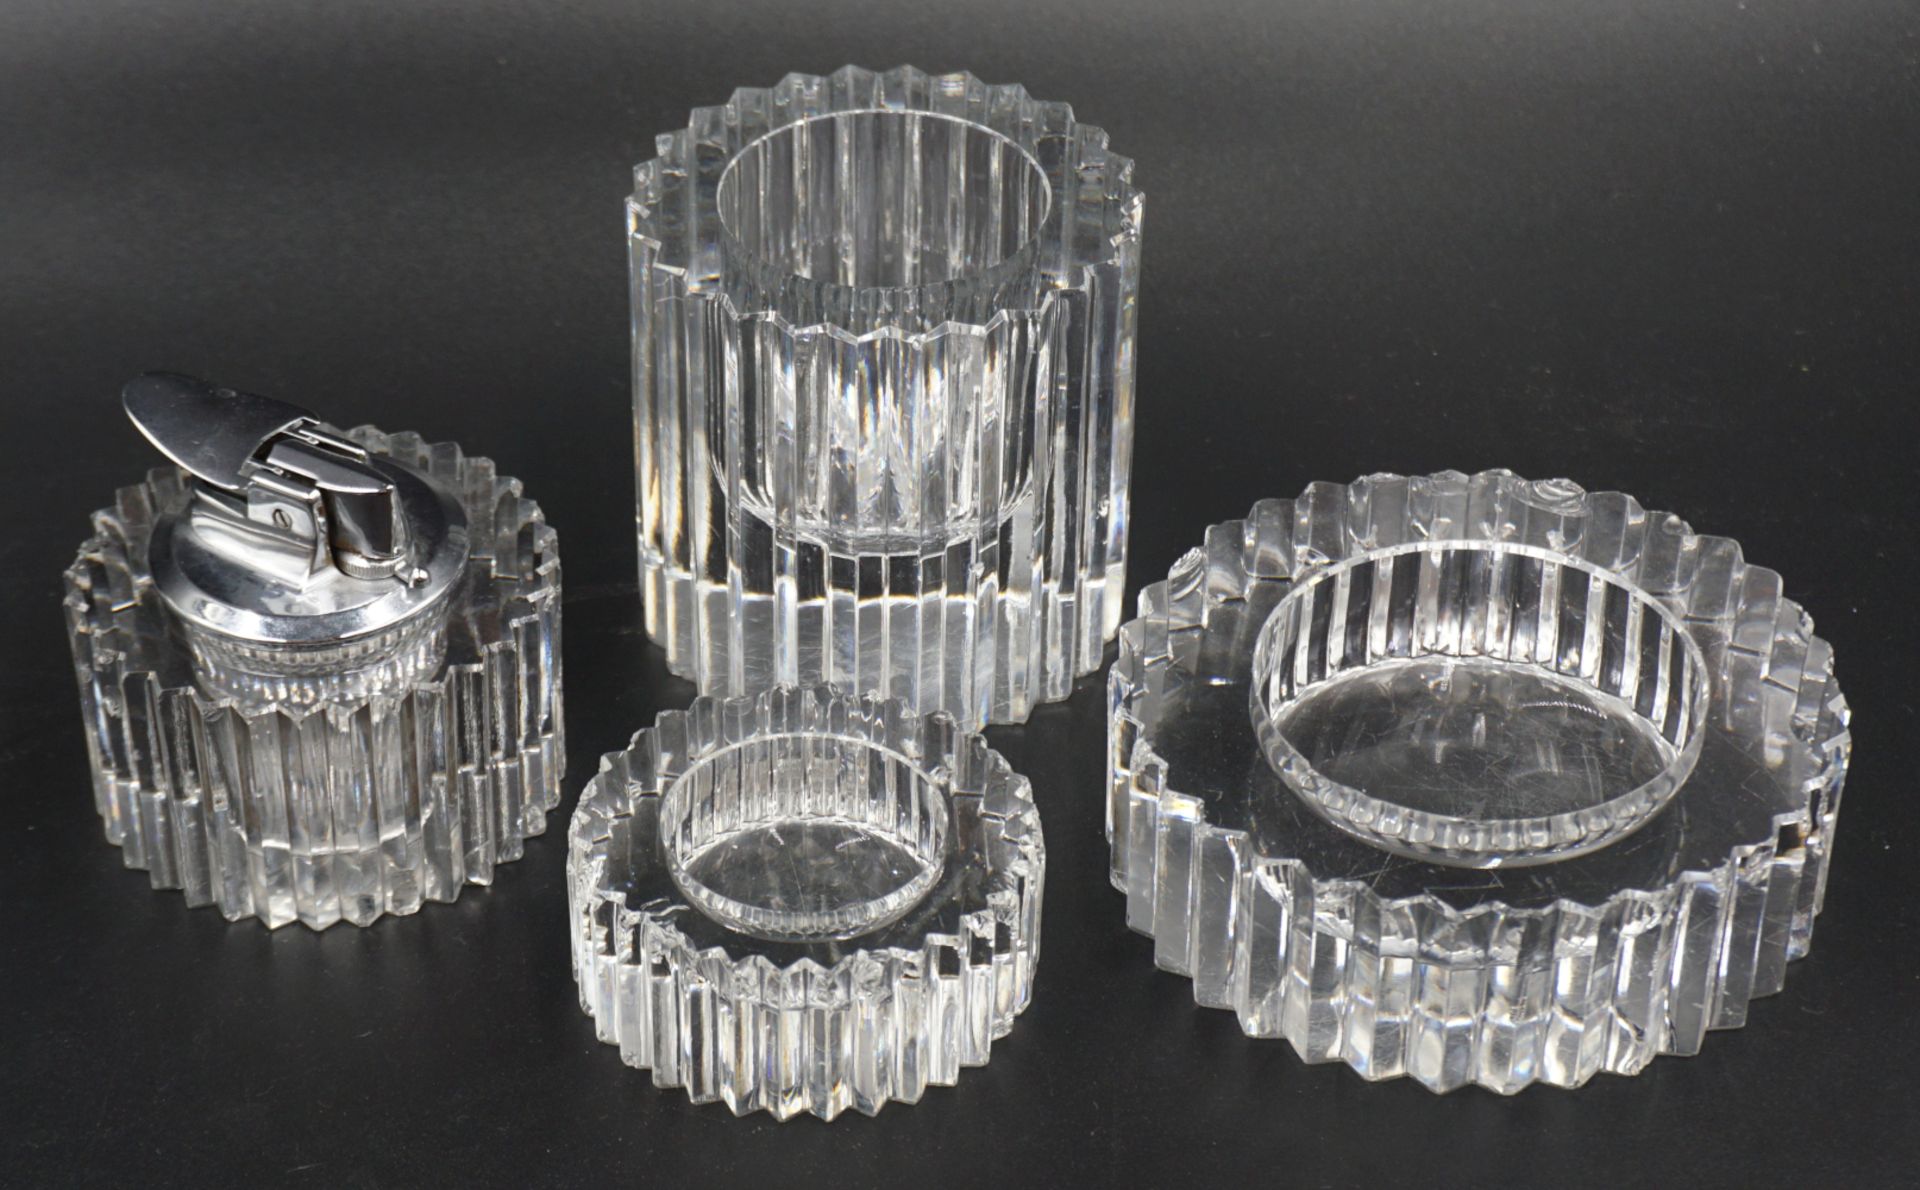 1 vierteiliges Raucherset ROSENTHAL Kristallglas mit Keilschliffdekor, wohl 1970er Jahre,